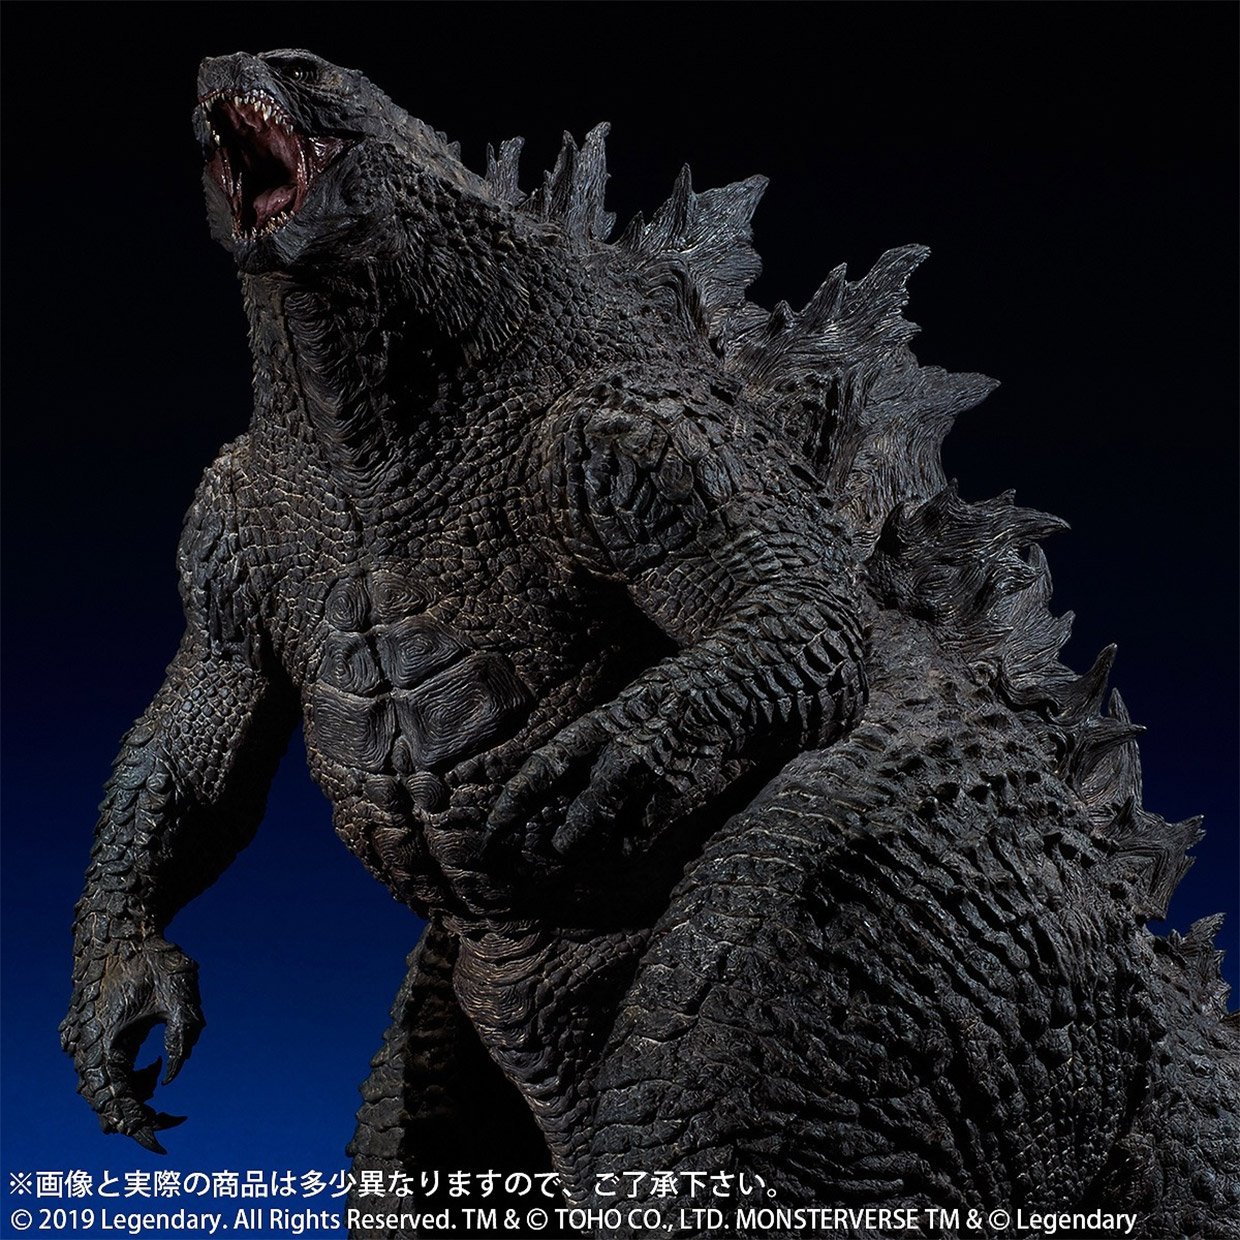 X-PLUS Gigantic Godzilla